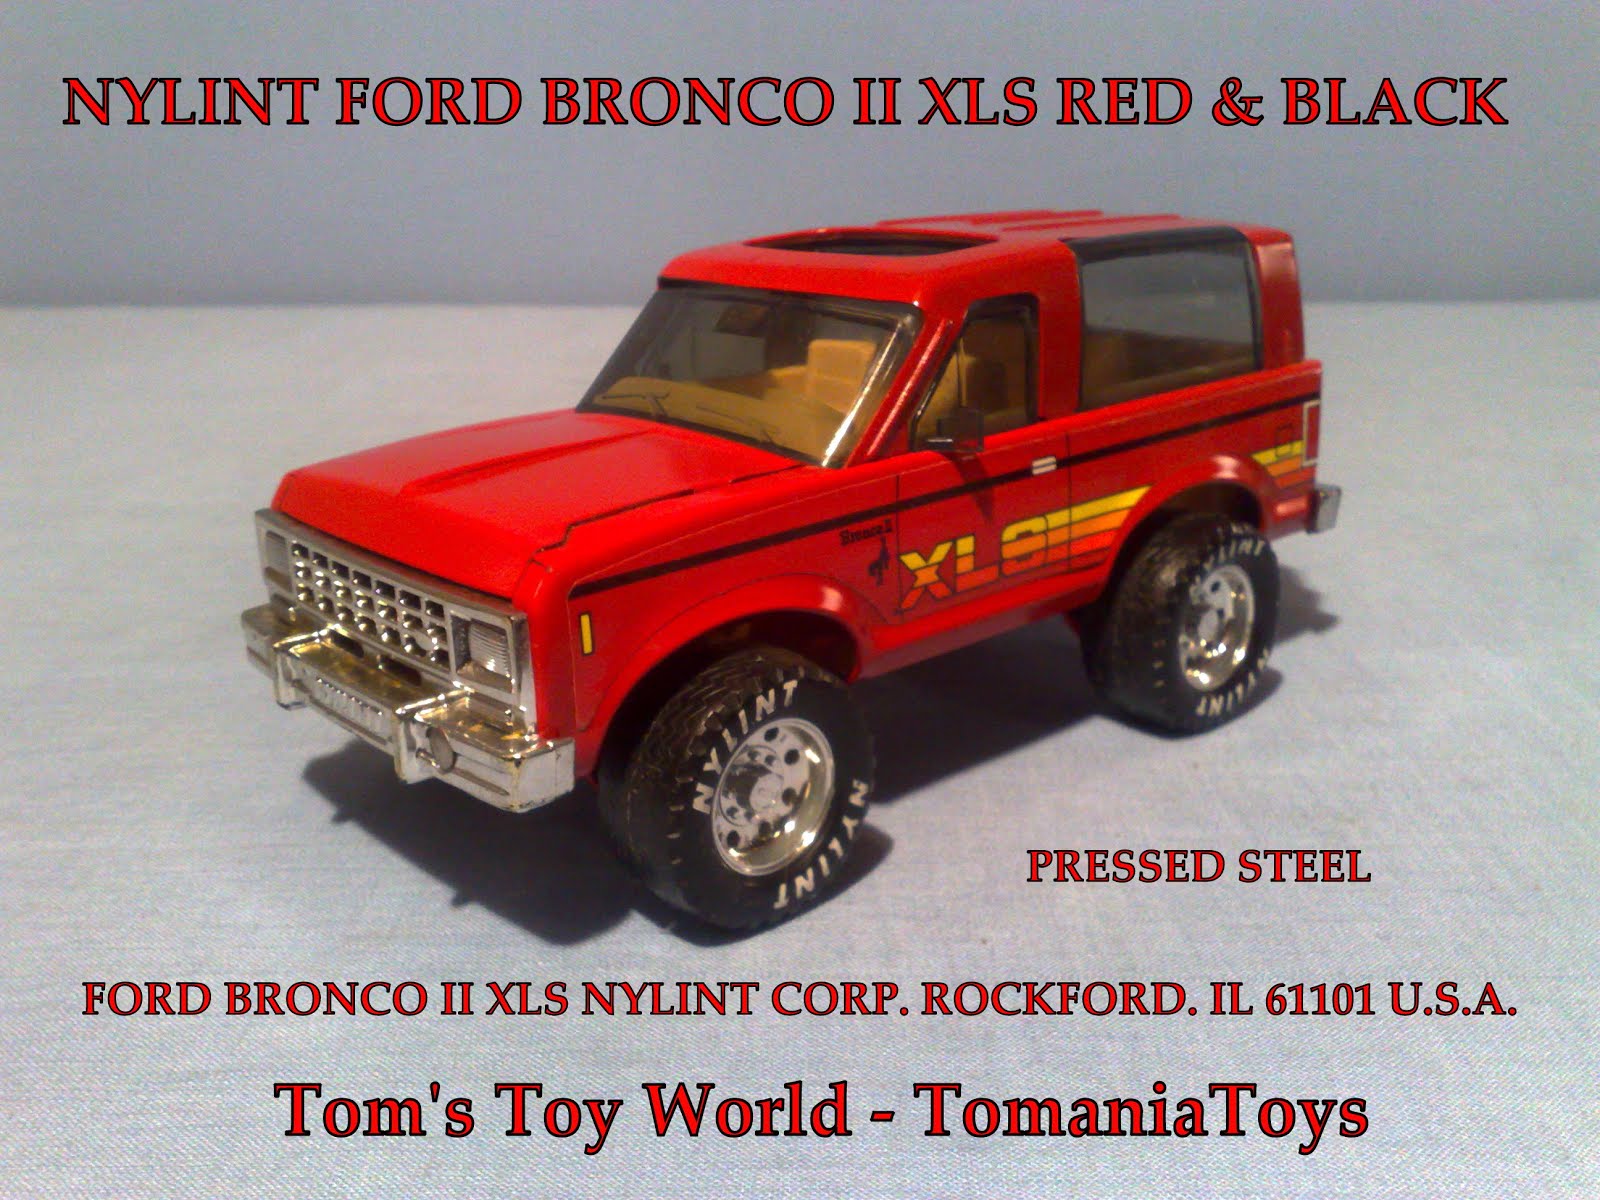 Ford Bronco II XLS